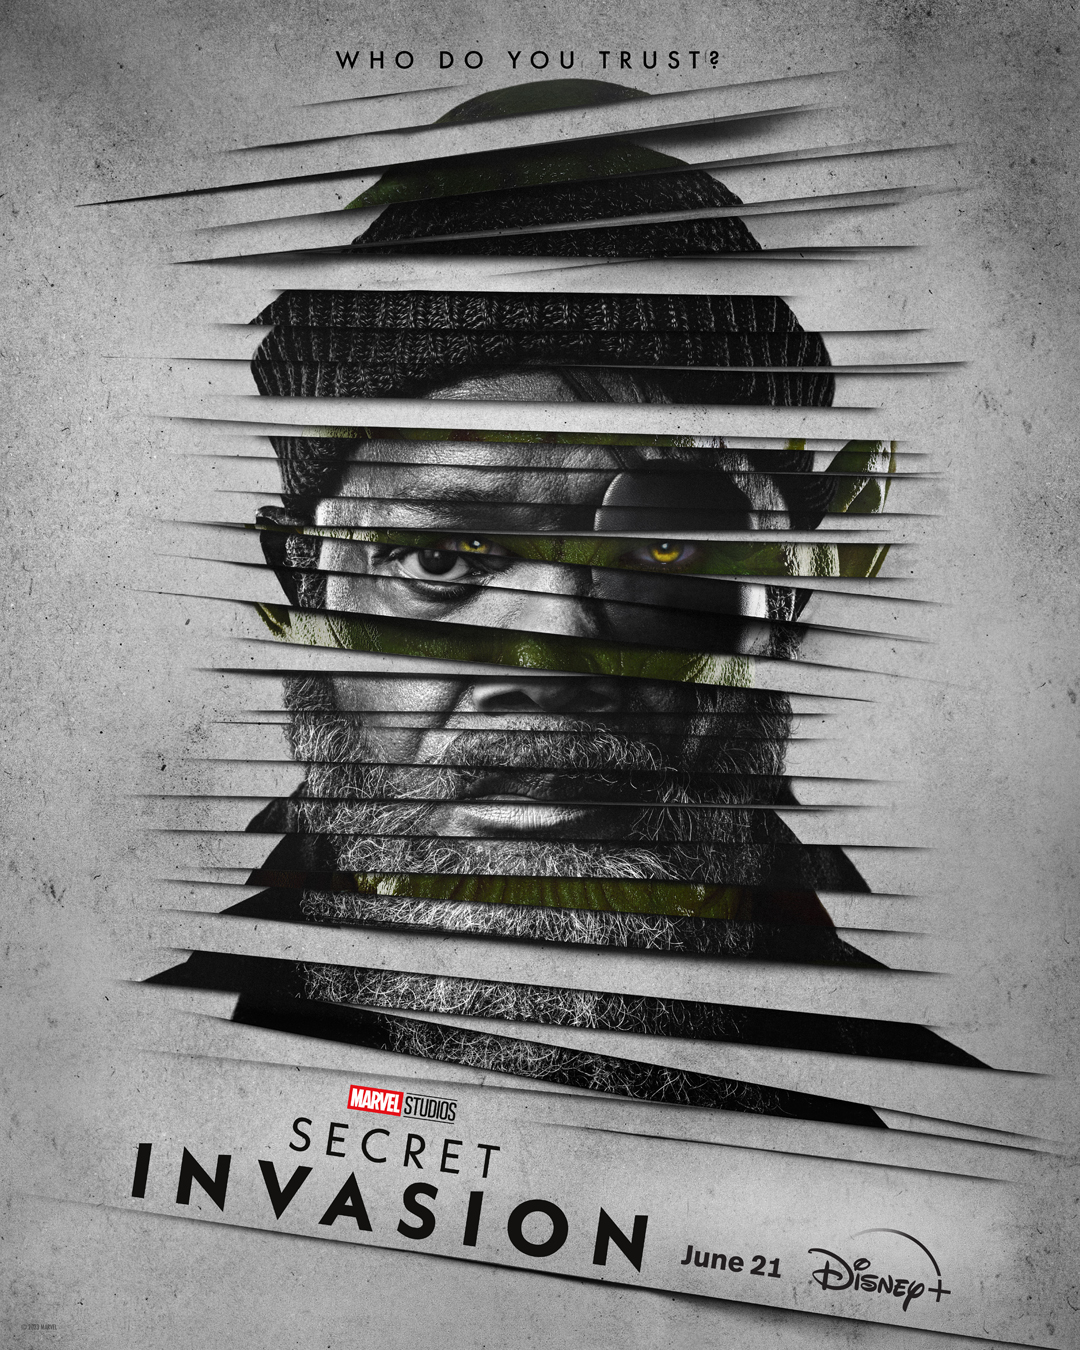 Marvel Studios releases new trailer for 'Secret Invasion' series